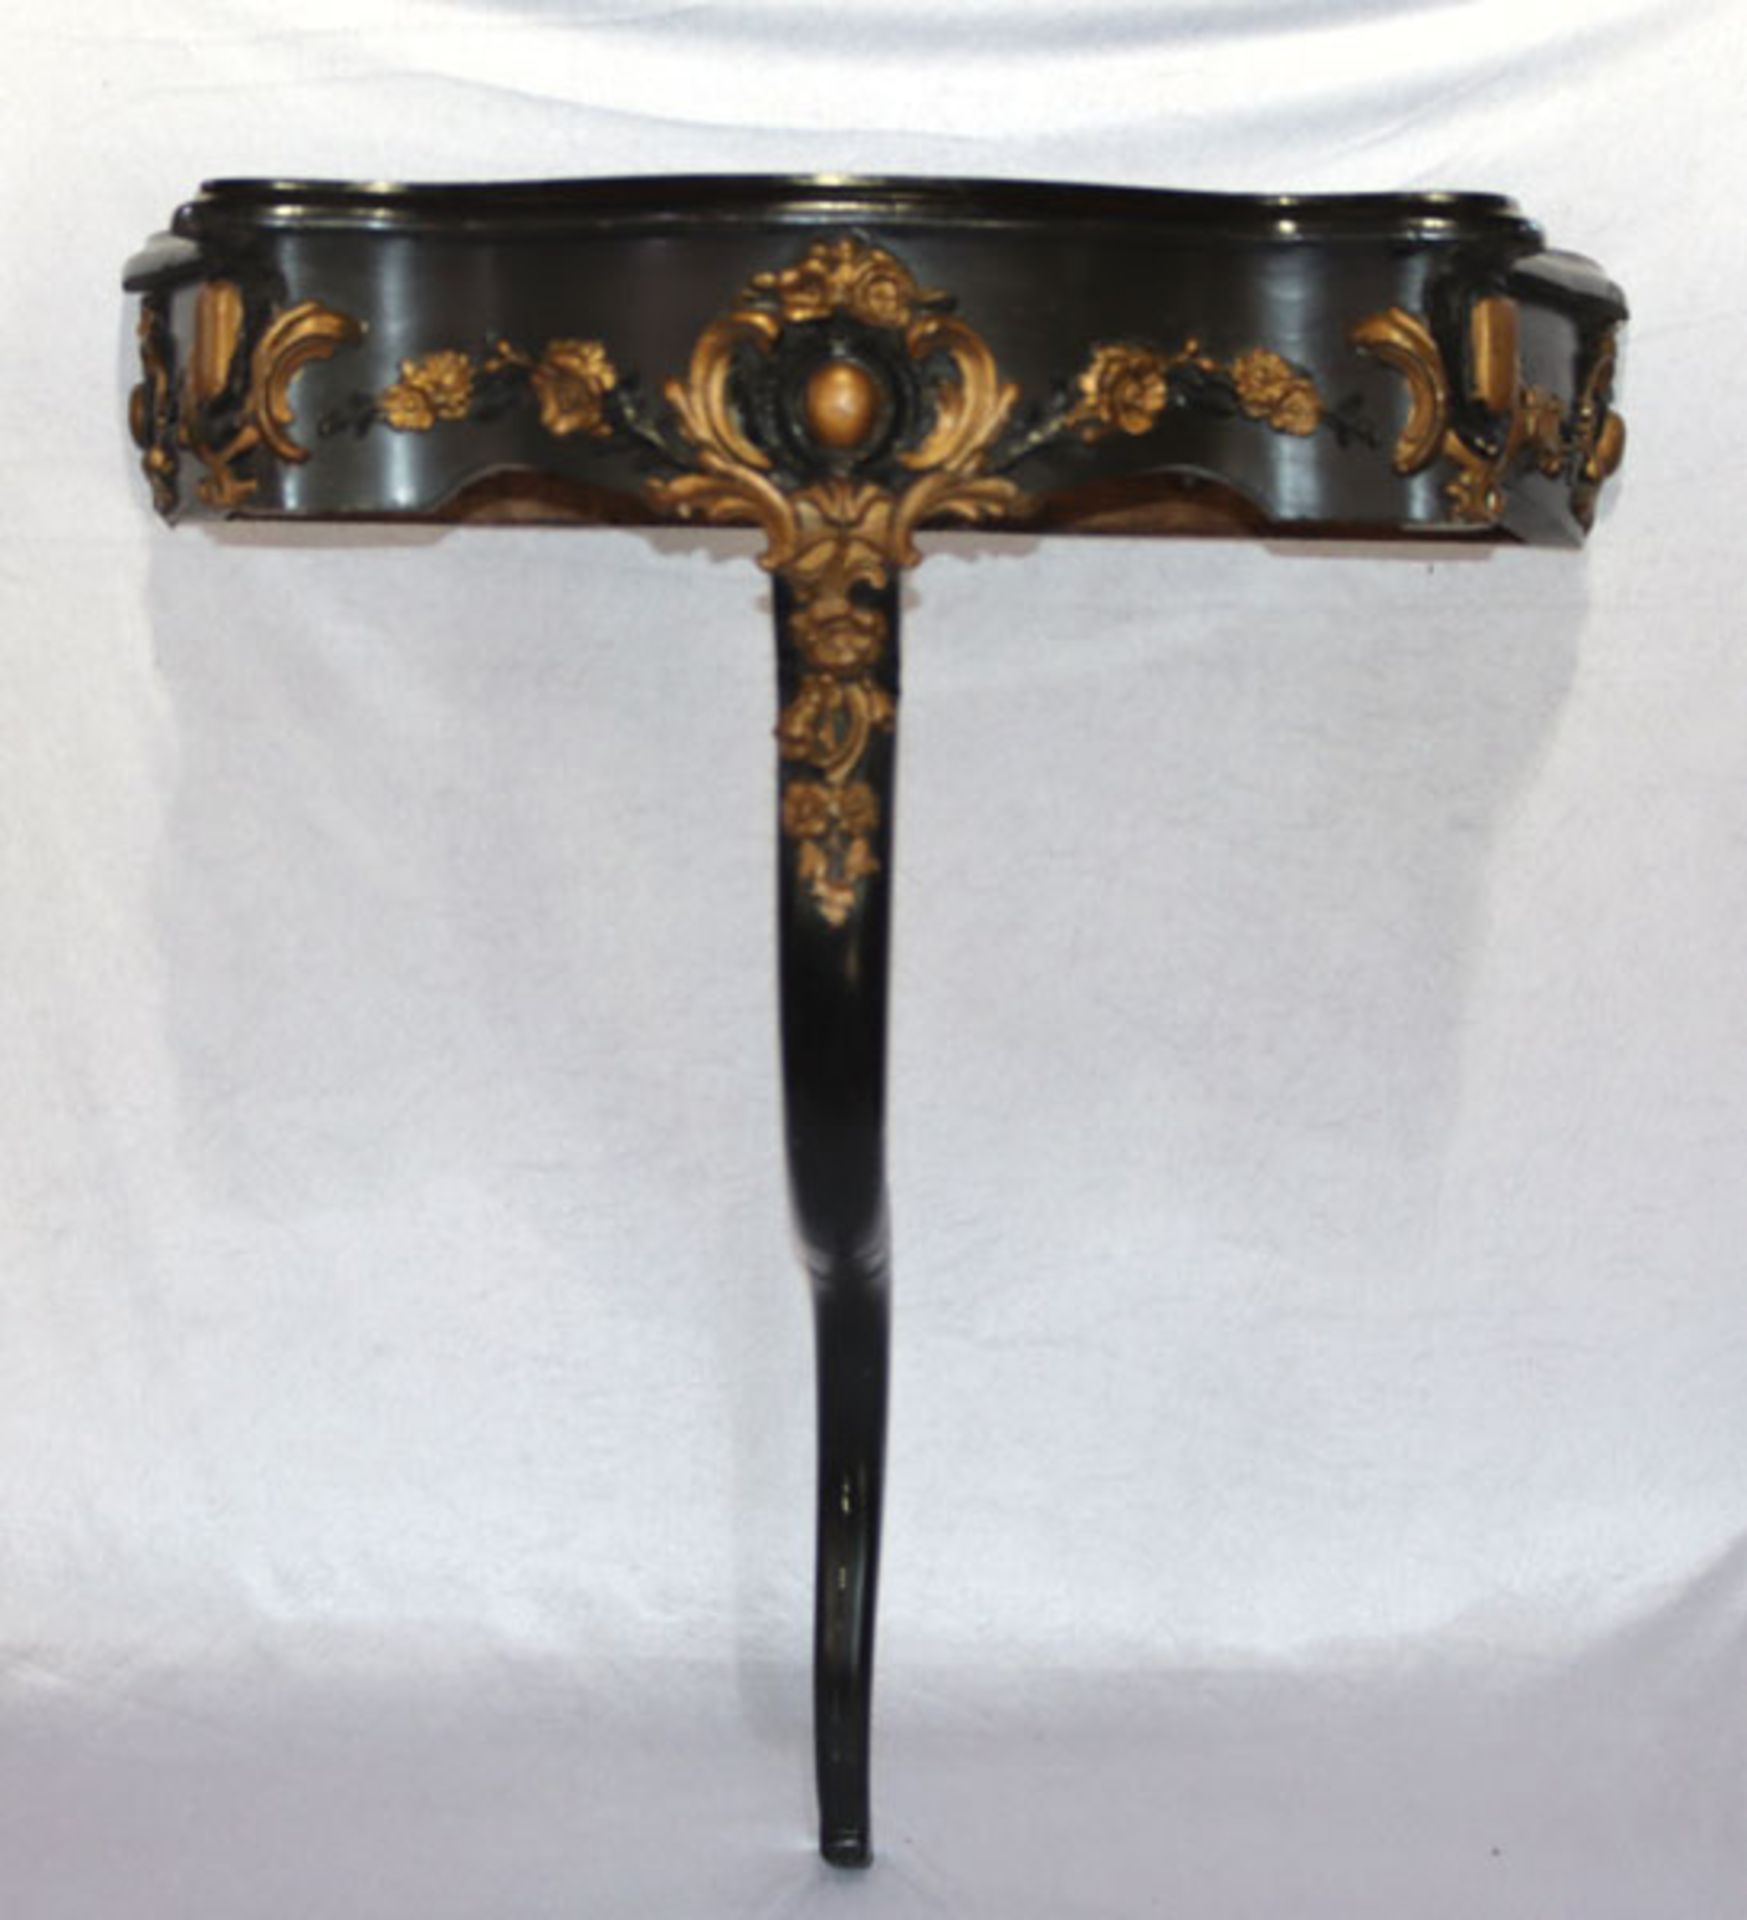 Holz Wandtisch auf geschwungenem Fuß, Reliefdekor, schwarz/gold bemalt, H 89 cm, B 84 cm, T 42 cm,